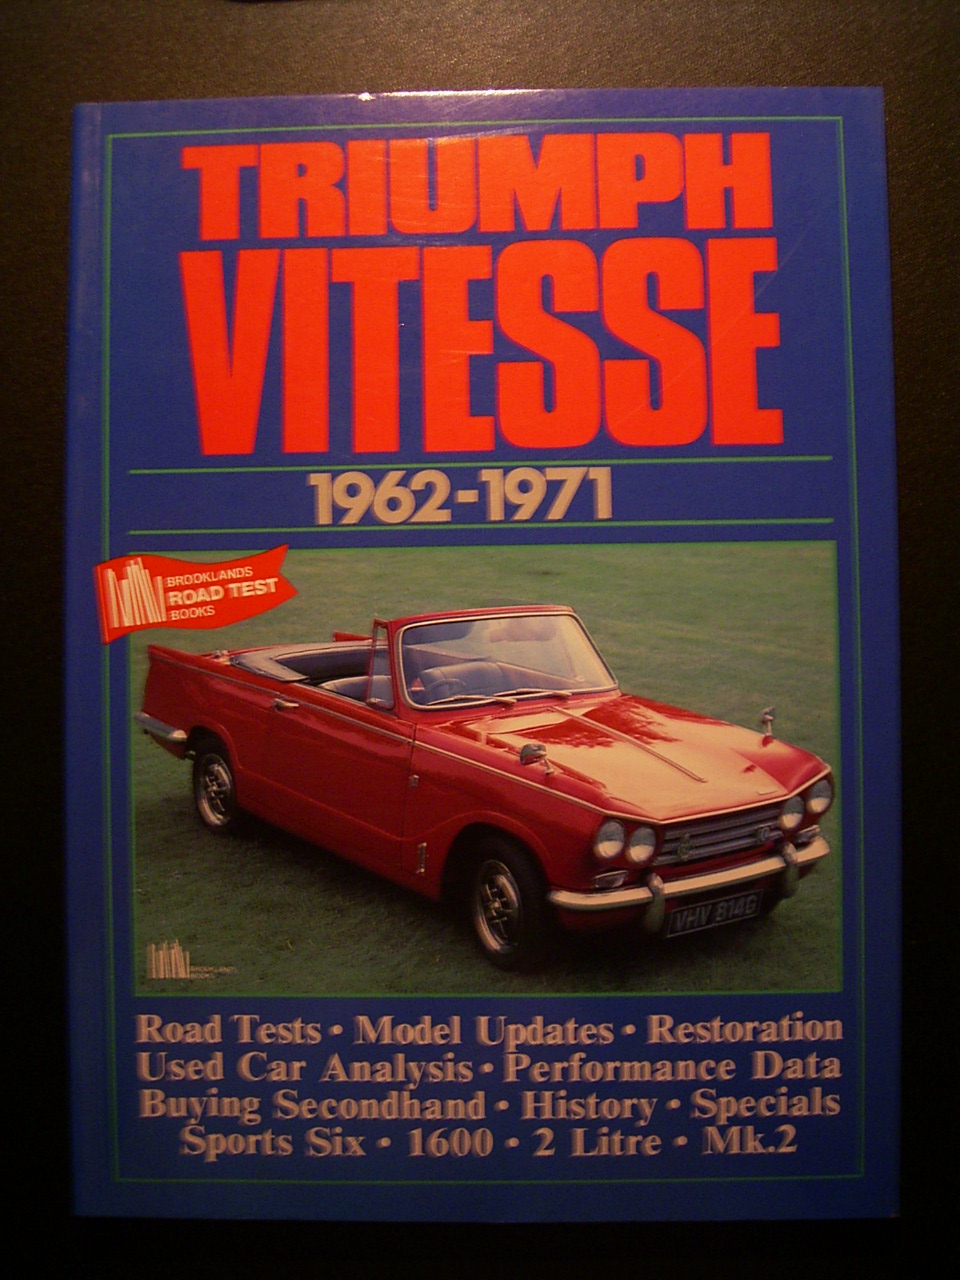 Triumph Vitesse 1962 - 1971